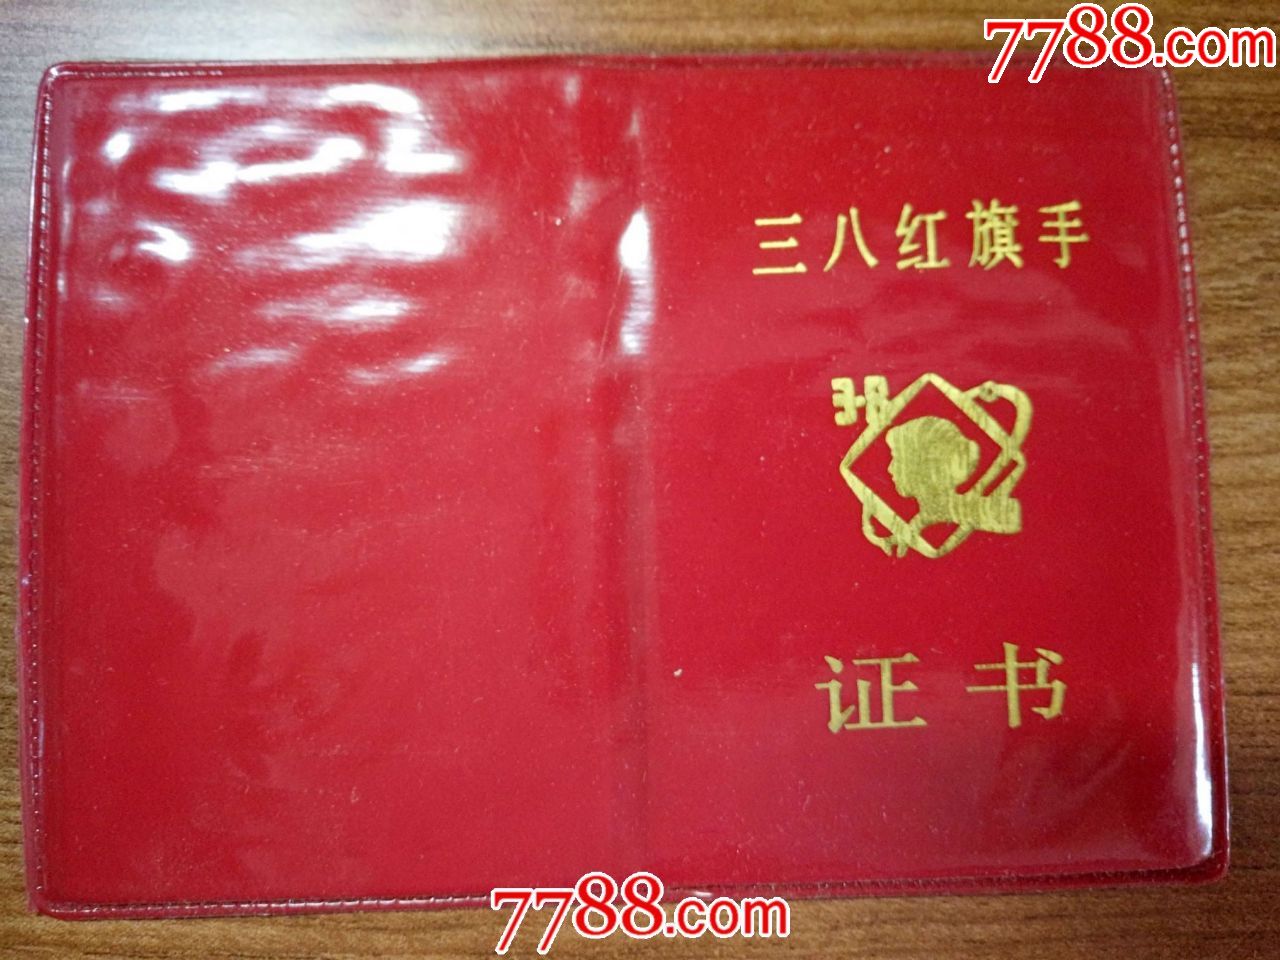 1994年上海铁路局蚌埠铁路分局:三八红旗手证